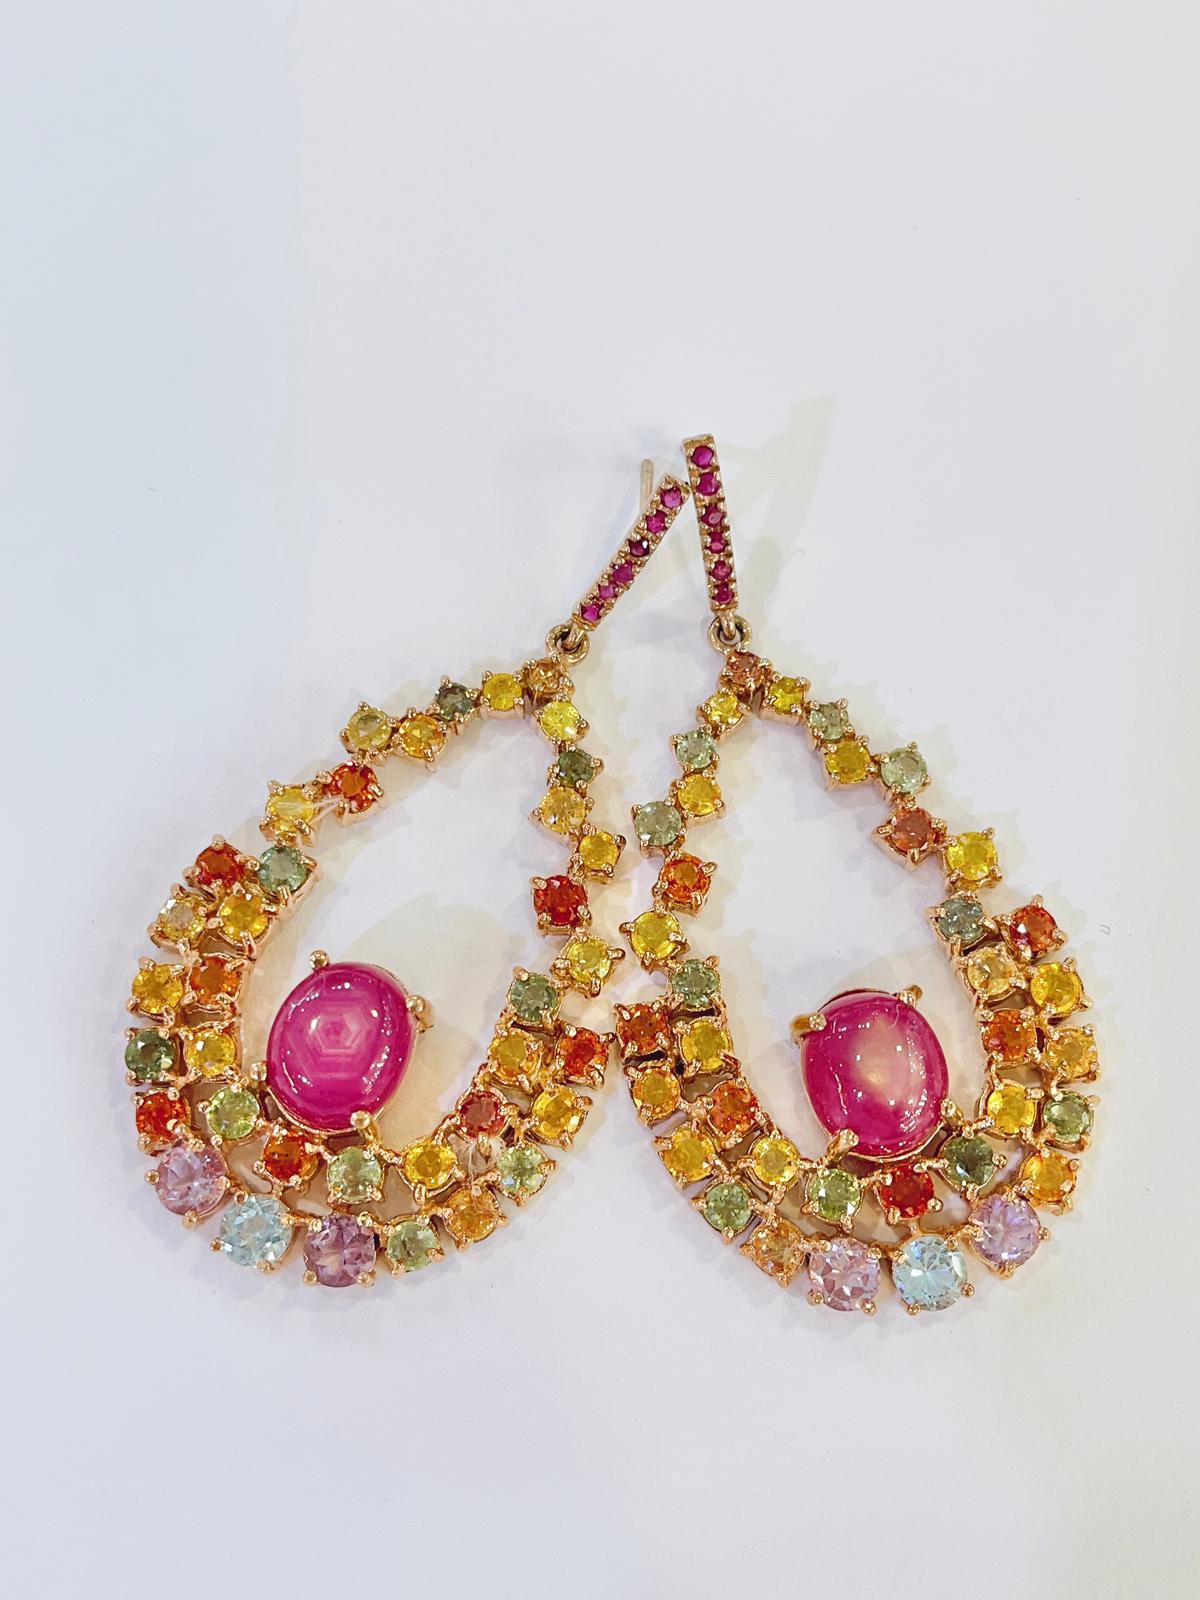 Bochic “Capri” Red Ruby & Multi Fancy Sapphire Earrings Set in 22k Gold & Silver For Sale 10